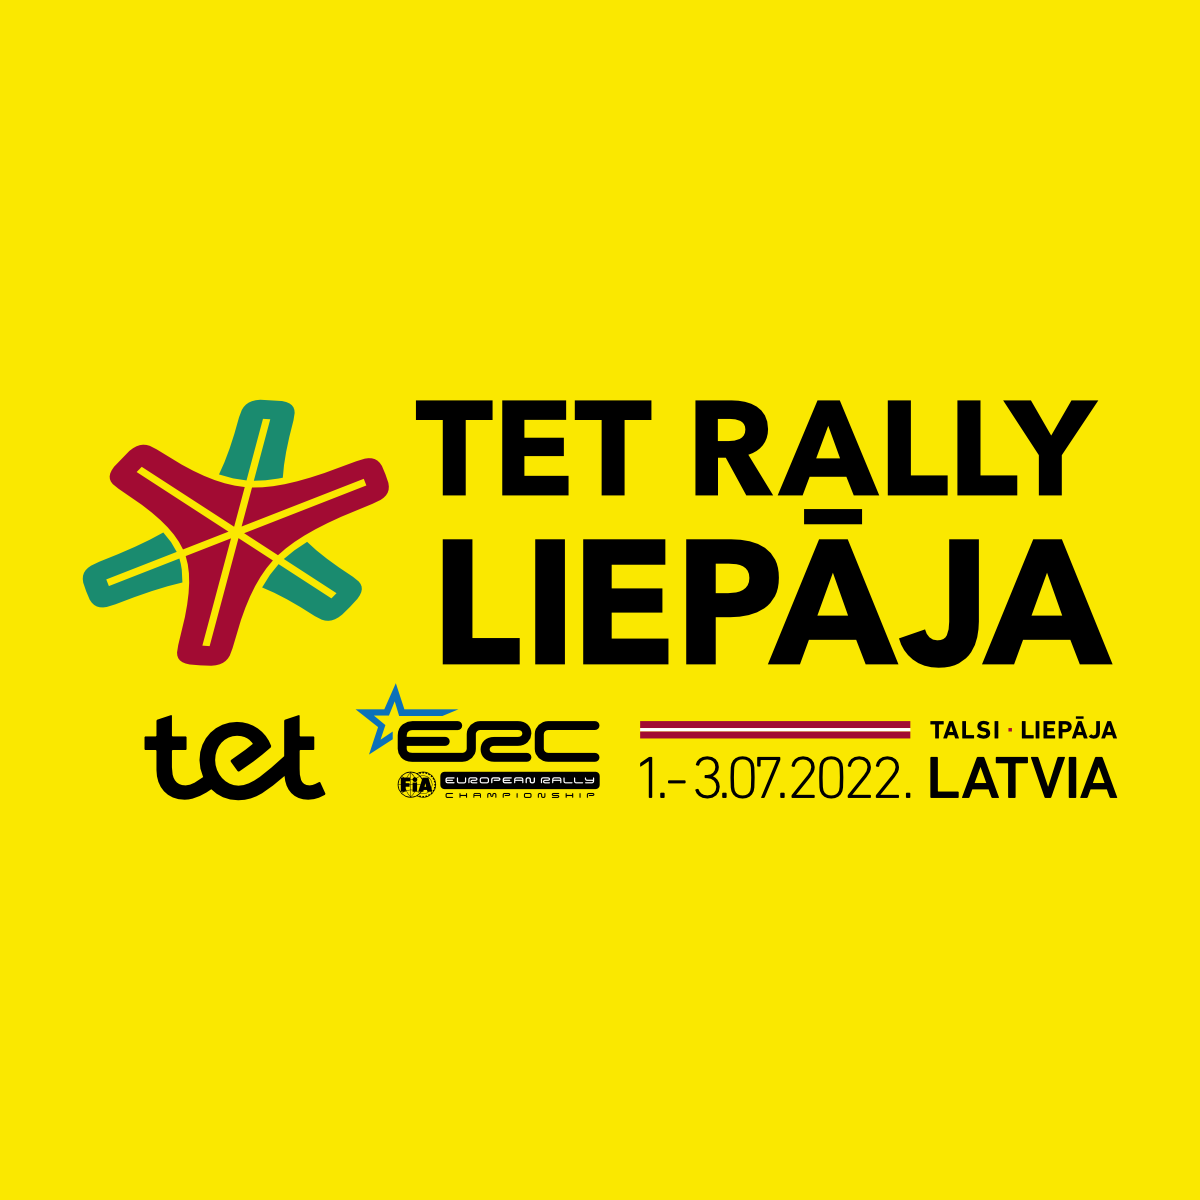 TET Rally Liepaja